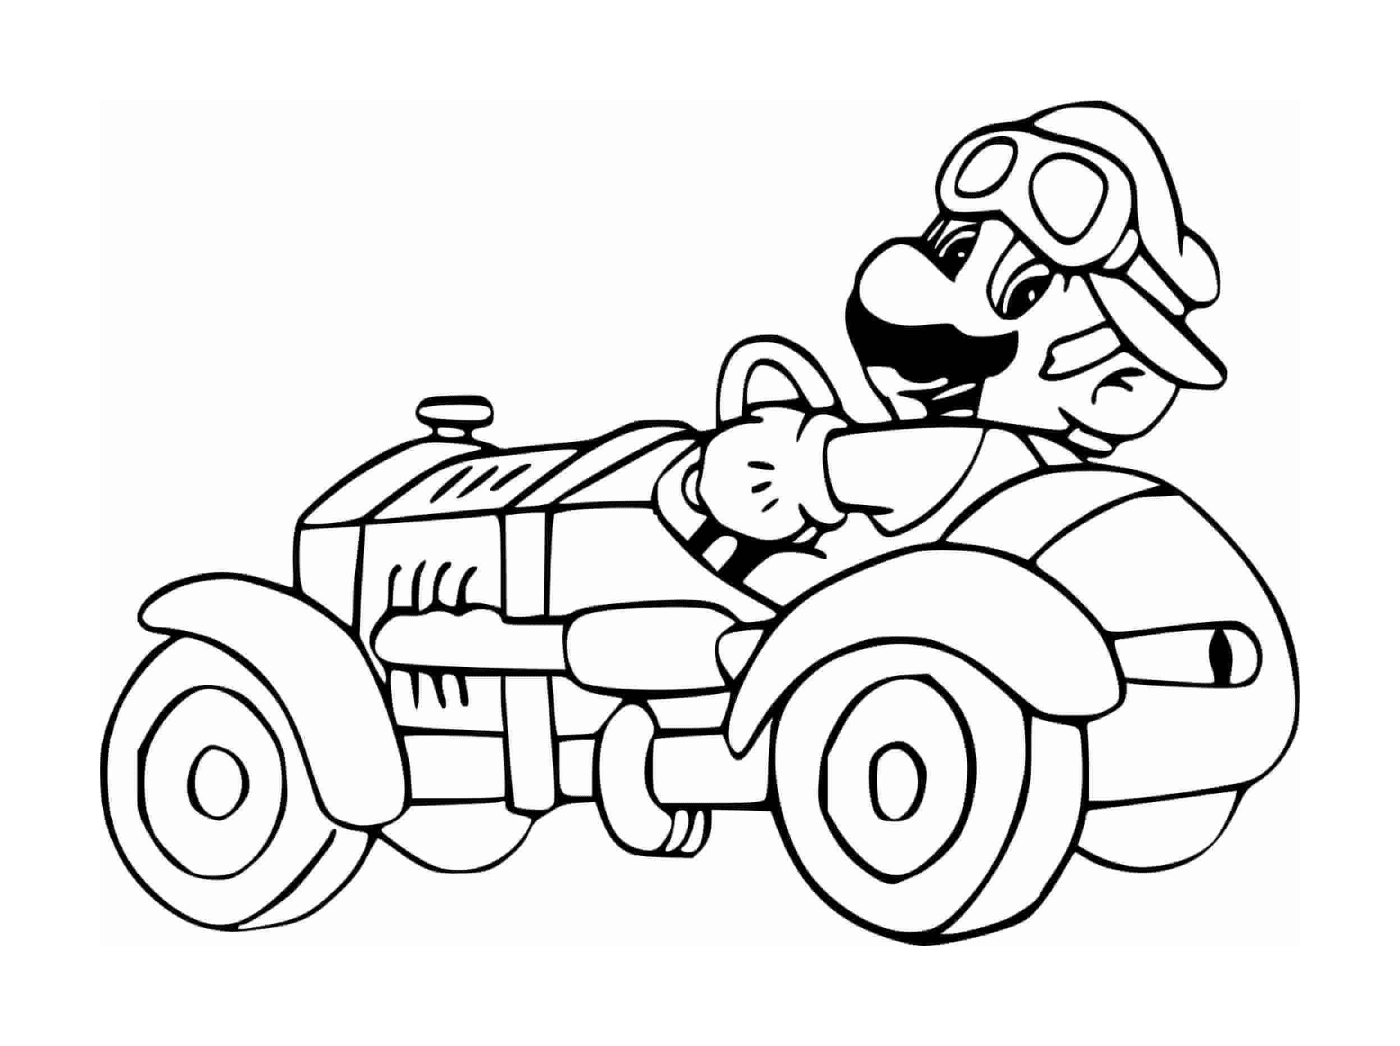  Марио водит машину 